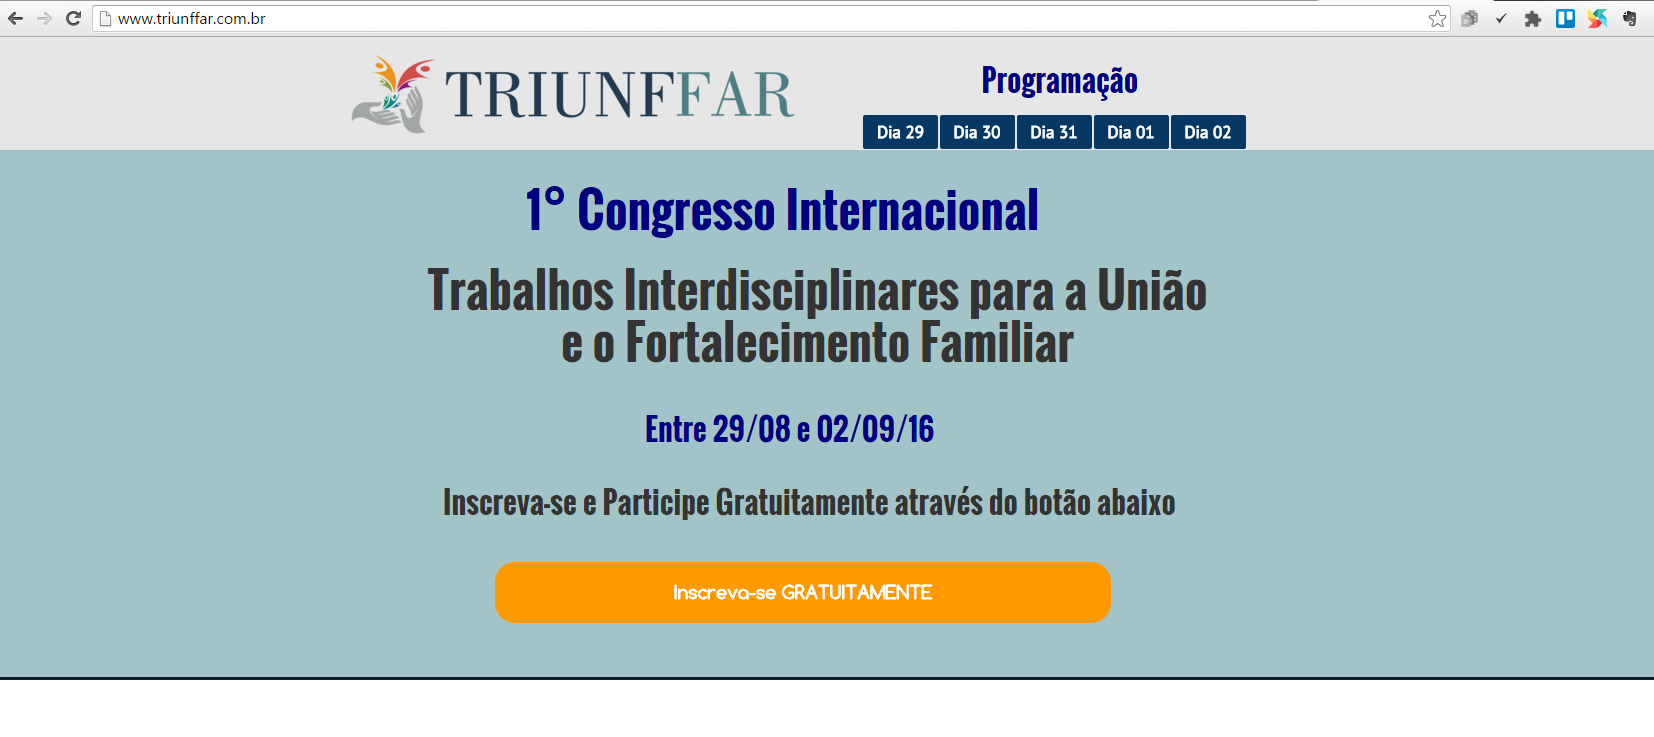 TRIUNFFAR - I congresso online gratuito de Trabalhos Interdisciplinares para a União e Fortalecimento Familiar